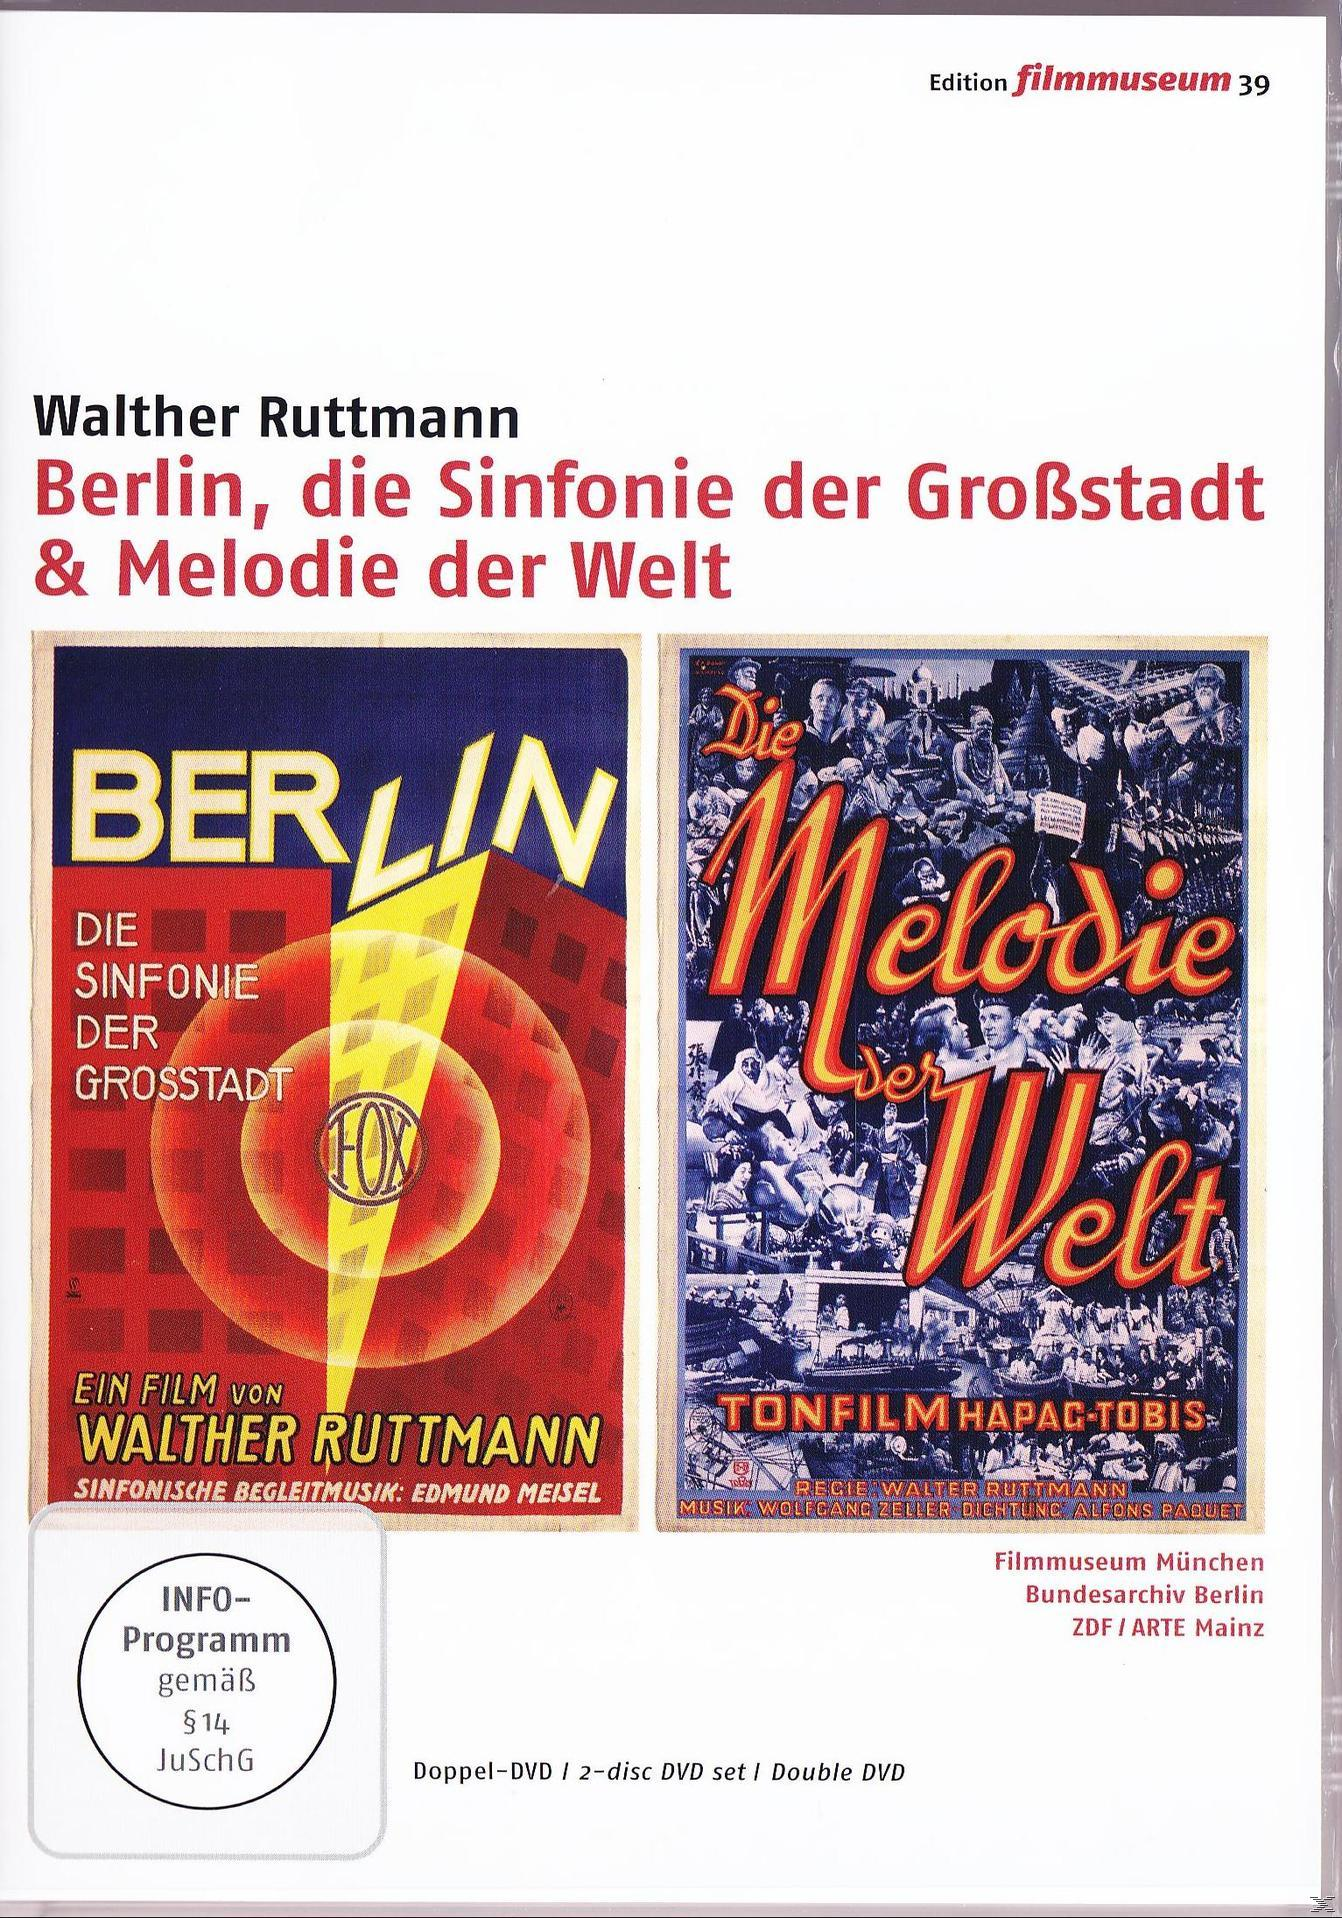 Melodie die der DVD Großstadt der & Sinfonie Berlin, Welt